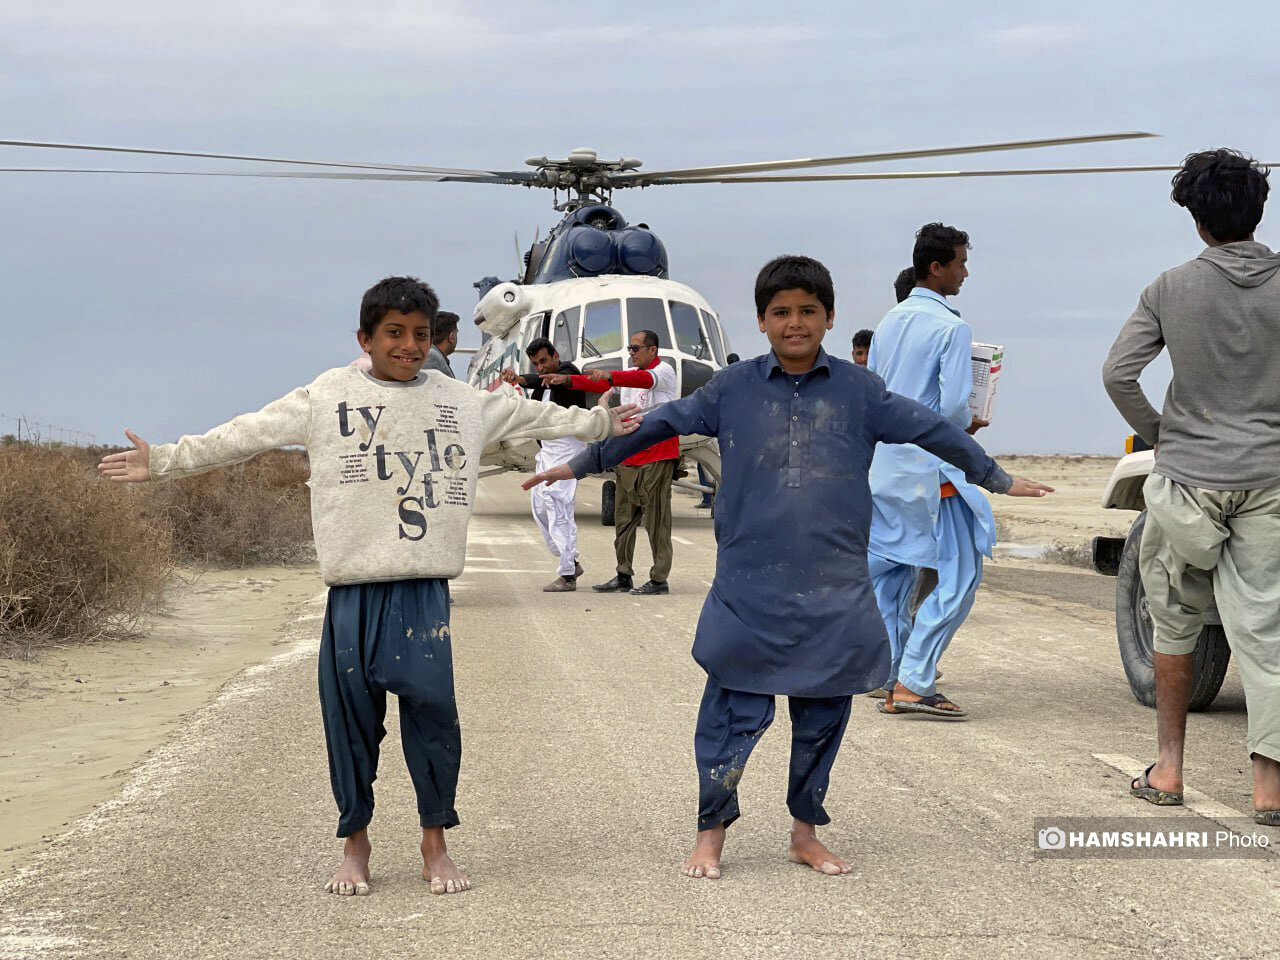 تصاویر اختصاصی همشهری از امدادرسانی سیل سیستان و بلوچستان